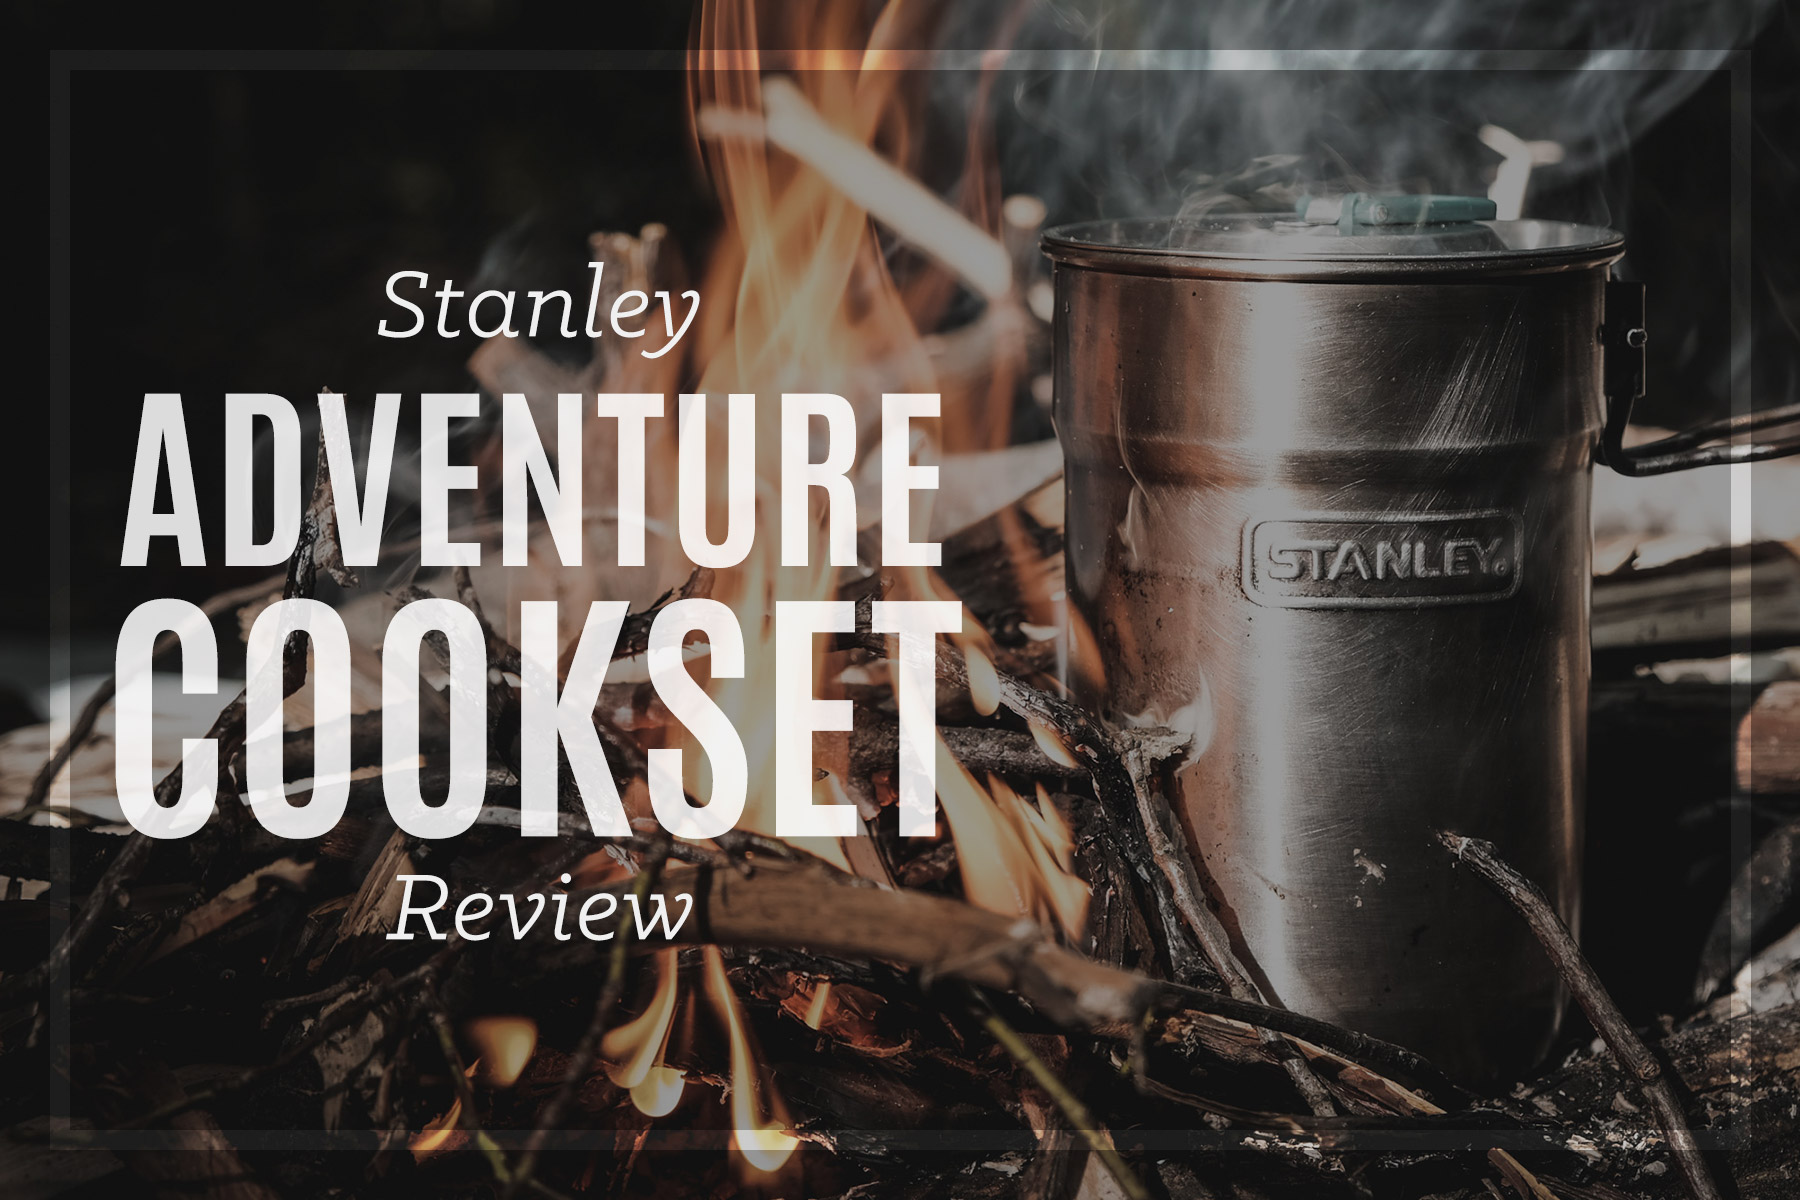 https://anthonyawaken.com/wp-content/uploads/2017/08/stanley-adventure-cookset-review-2017.jpg